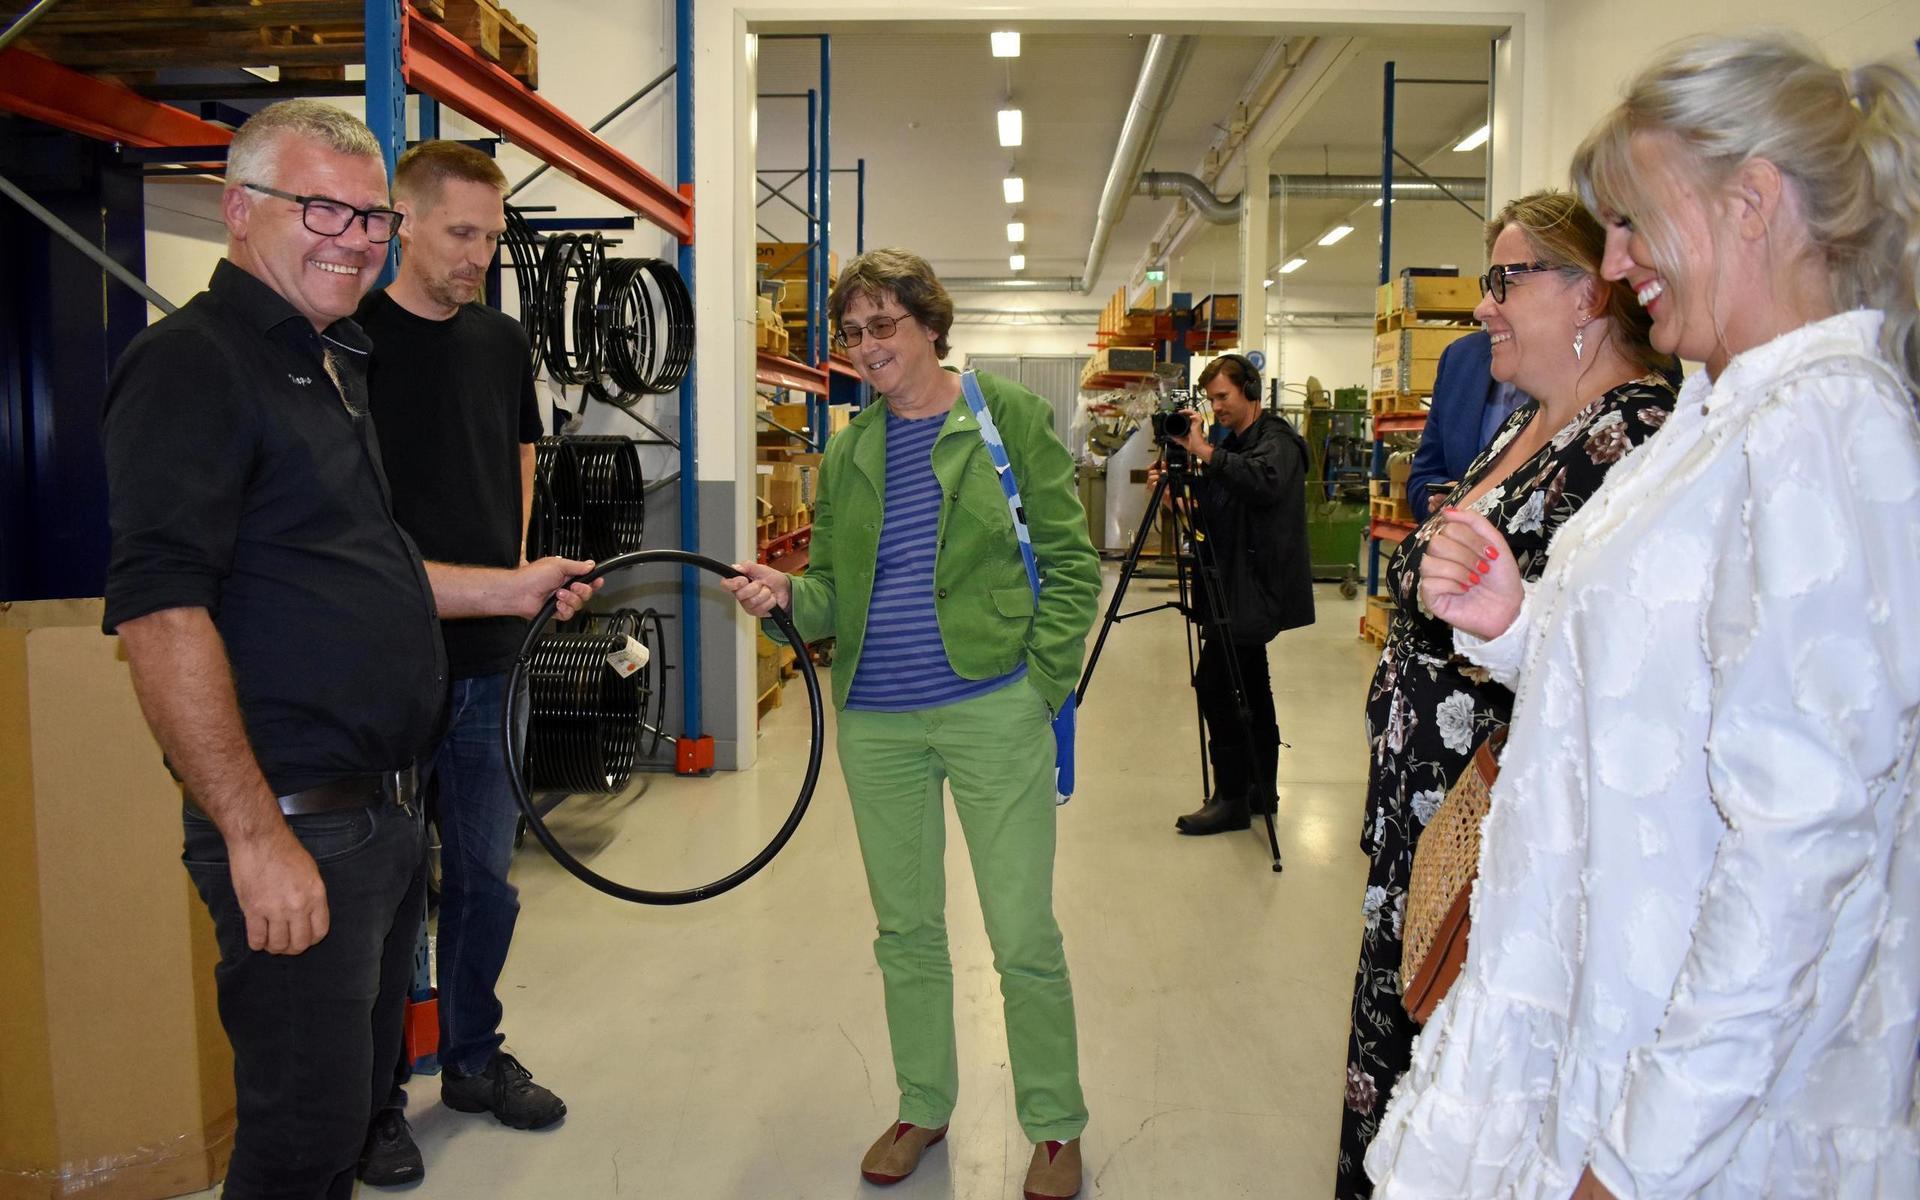 Hallands nya landshövding Brittis Benzler gjorde sitt första officiella besök i Hylte under måndagen och träffade bland andra företagsledarna på Decon Wheel.